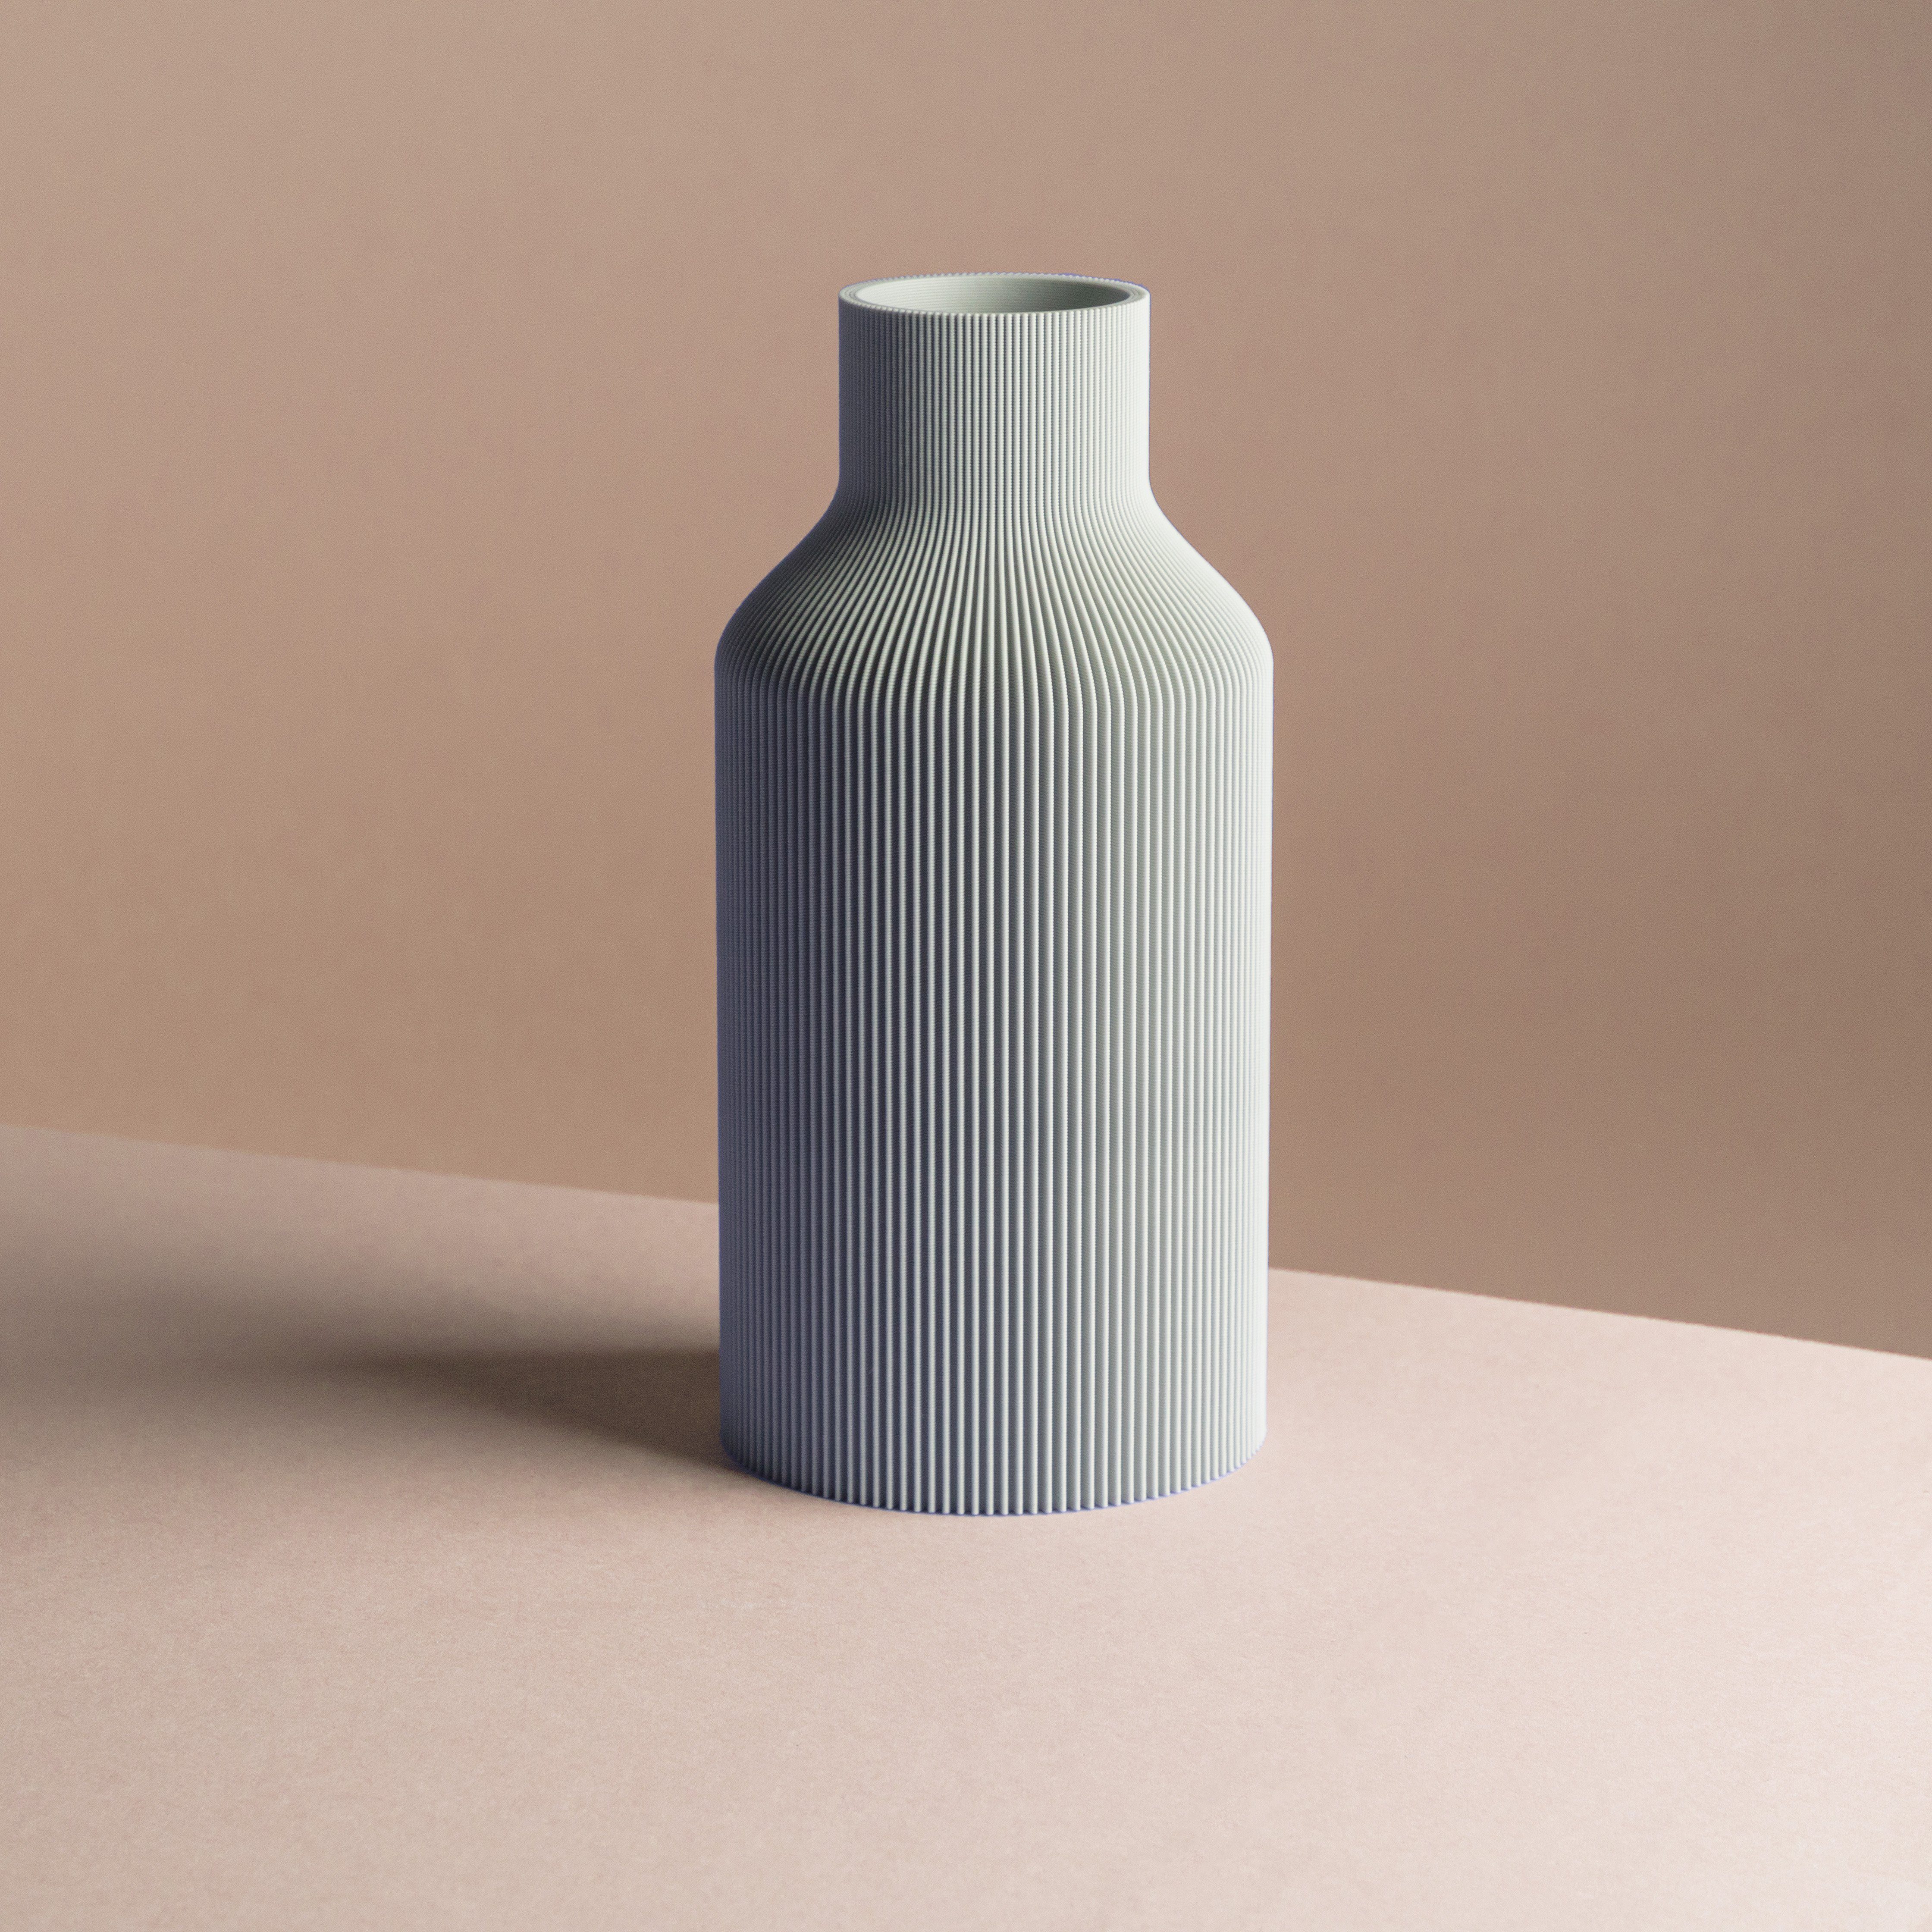 Dennismaass. Dekovase FLASCHE, 3D Druck, wundervolle Rillen-Optik, für Blumen aller Art, dekorative Vase aus dem 3D Drucker hellgrau